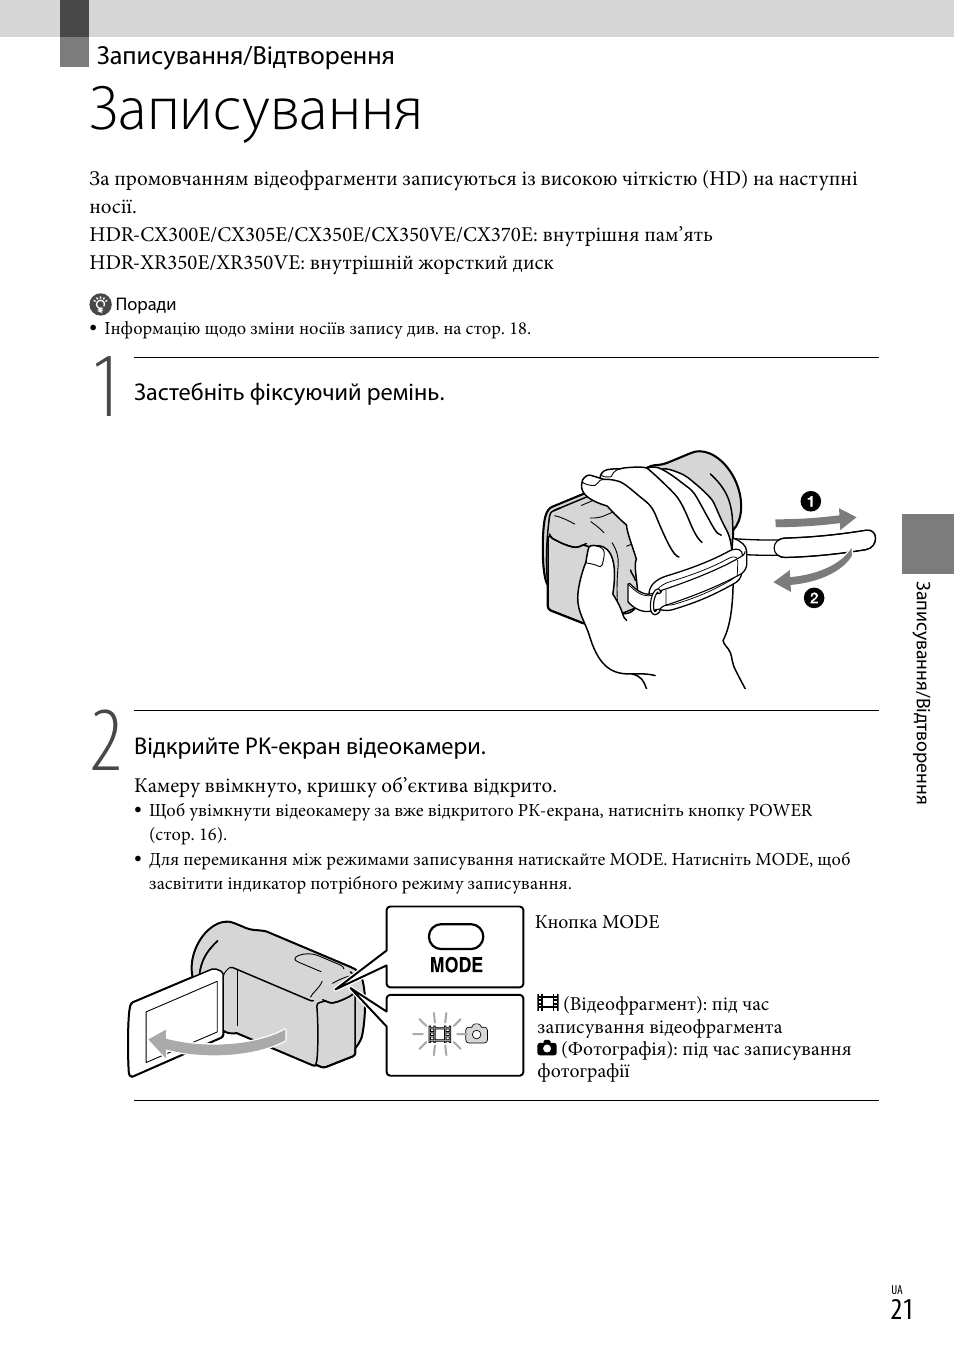 Записування/відтворення, Записування | Инструкция по эксплуатации Sony HDR-CX305E | Страница 103 / 167